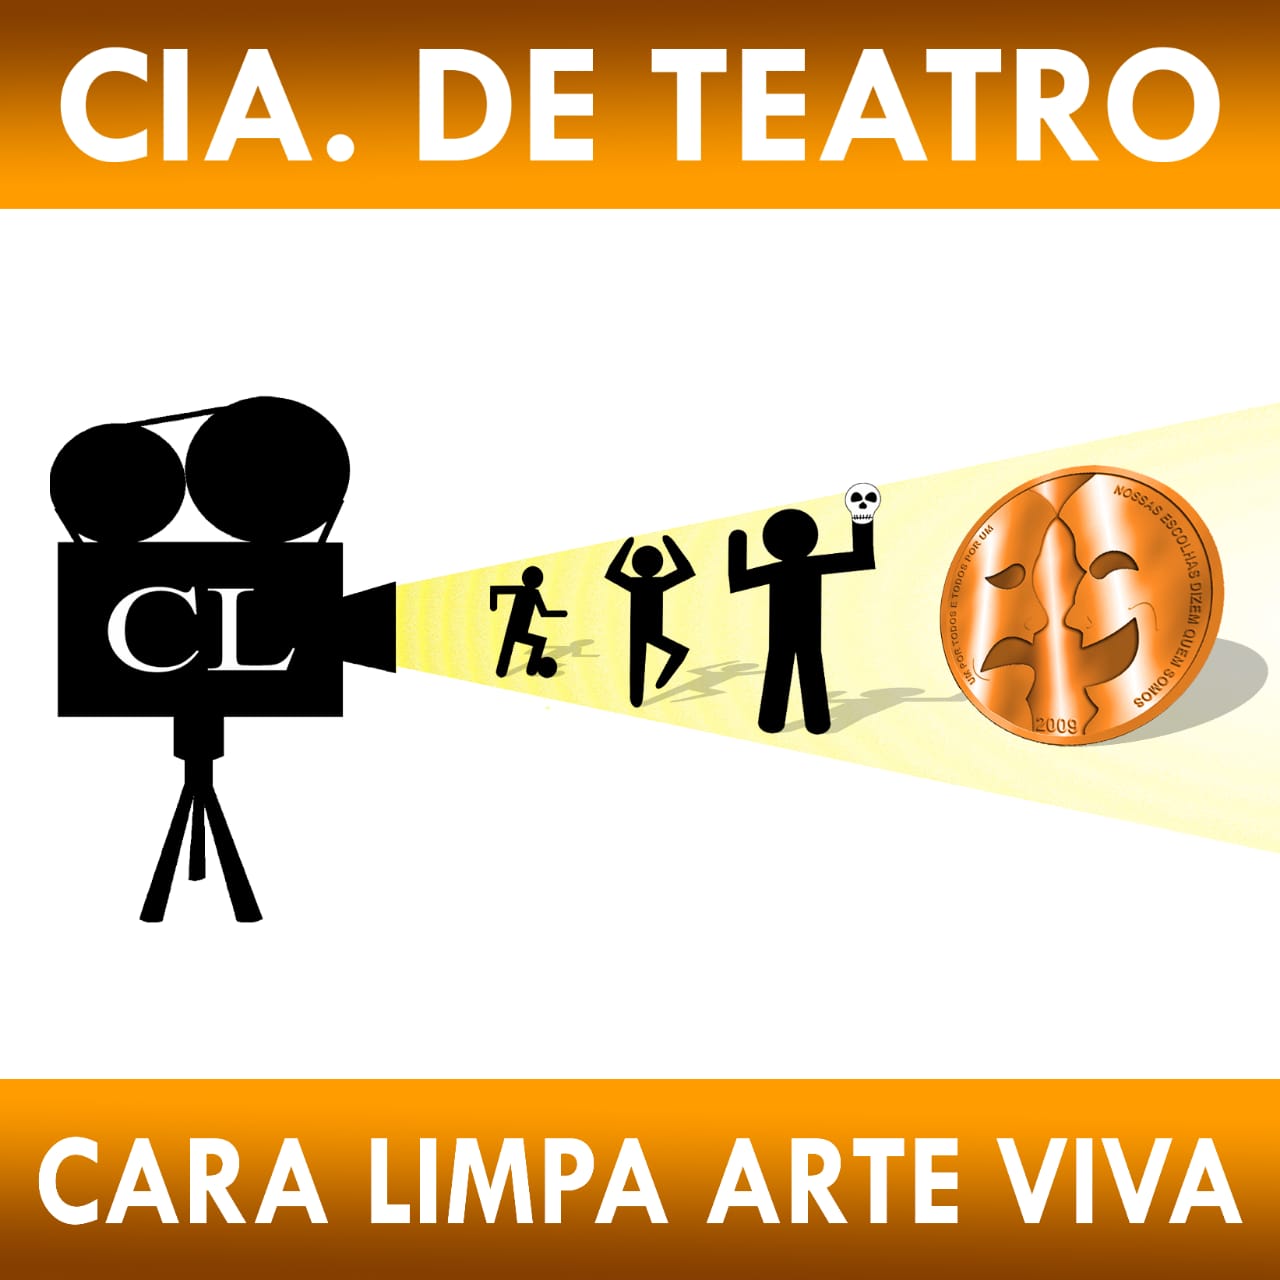 Cia de teatro Cara Limpa apresentará neste sábado a peça “A Menina e O Vento” no Cantinho da Roça